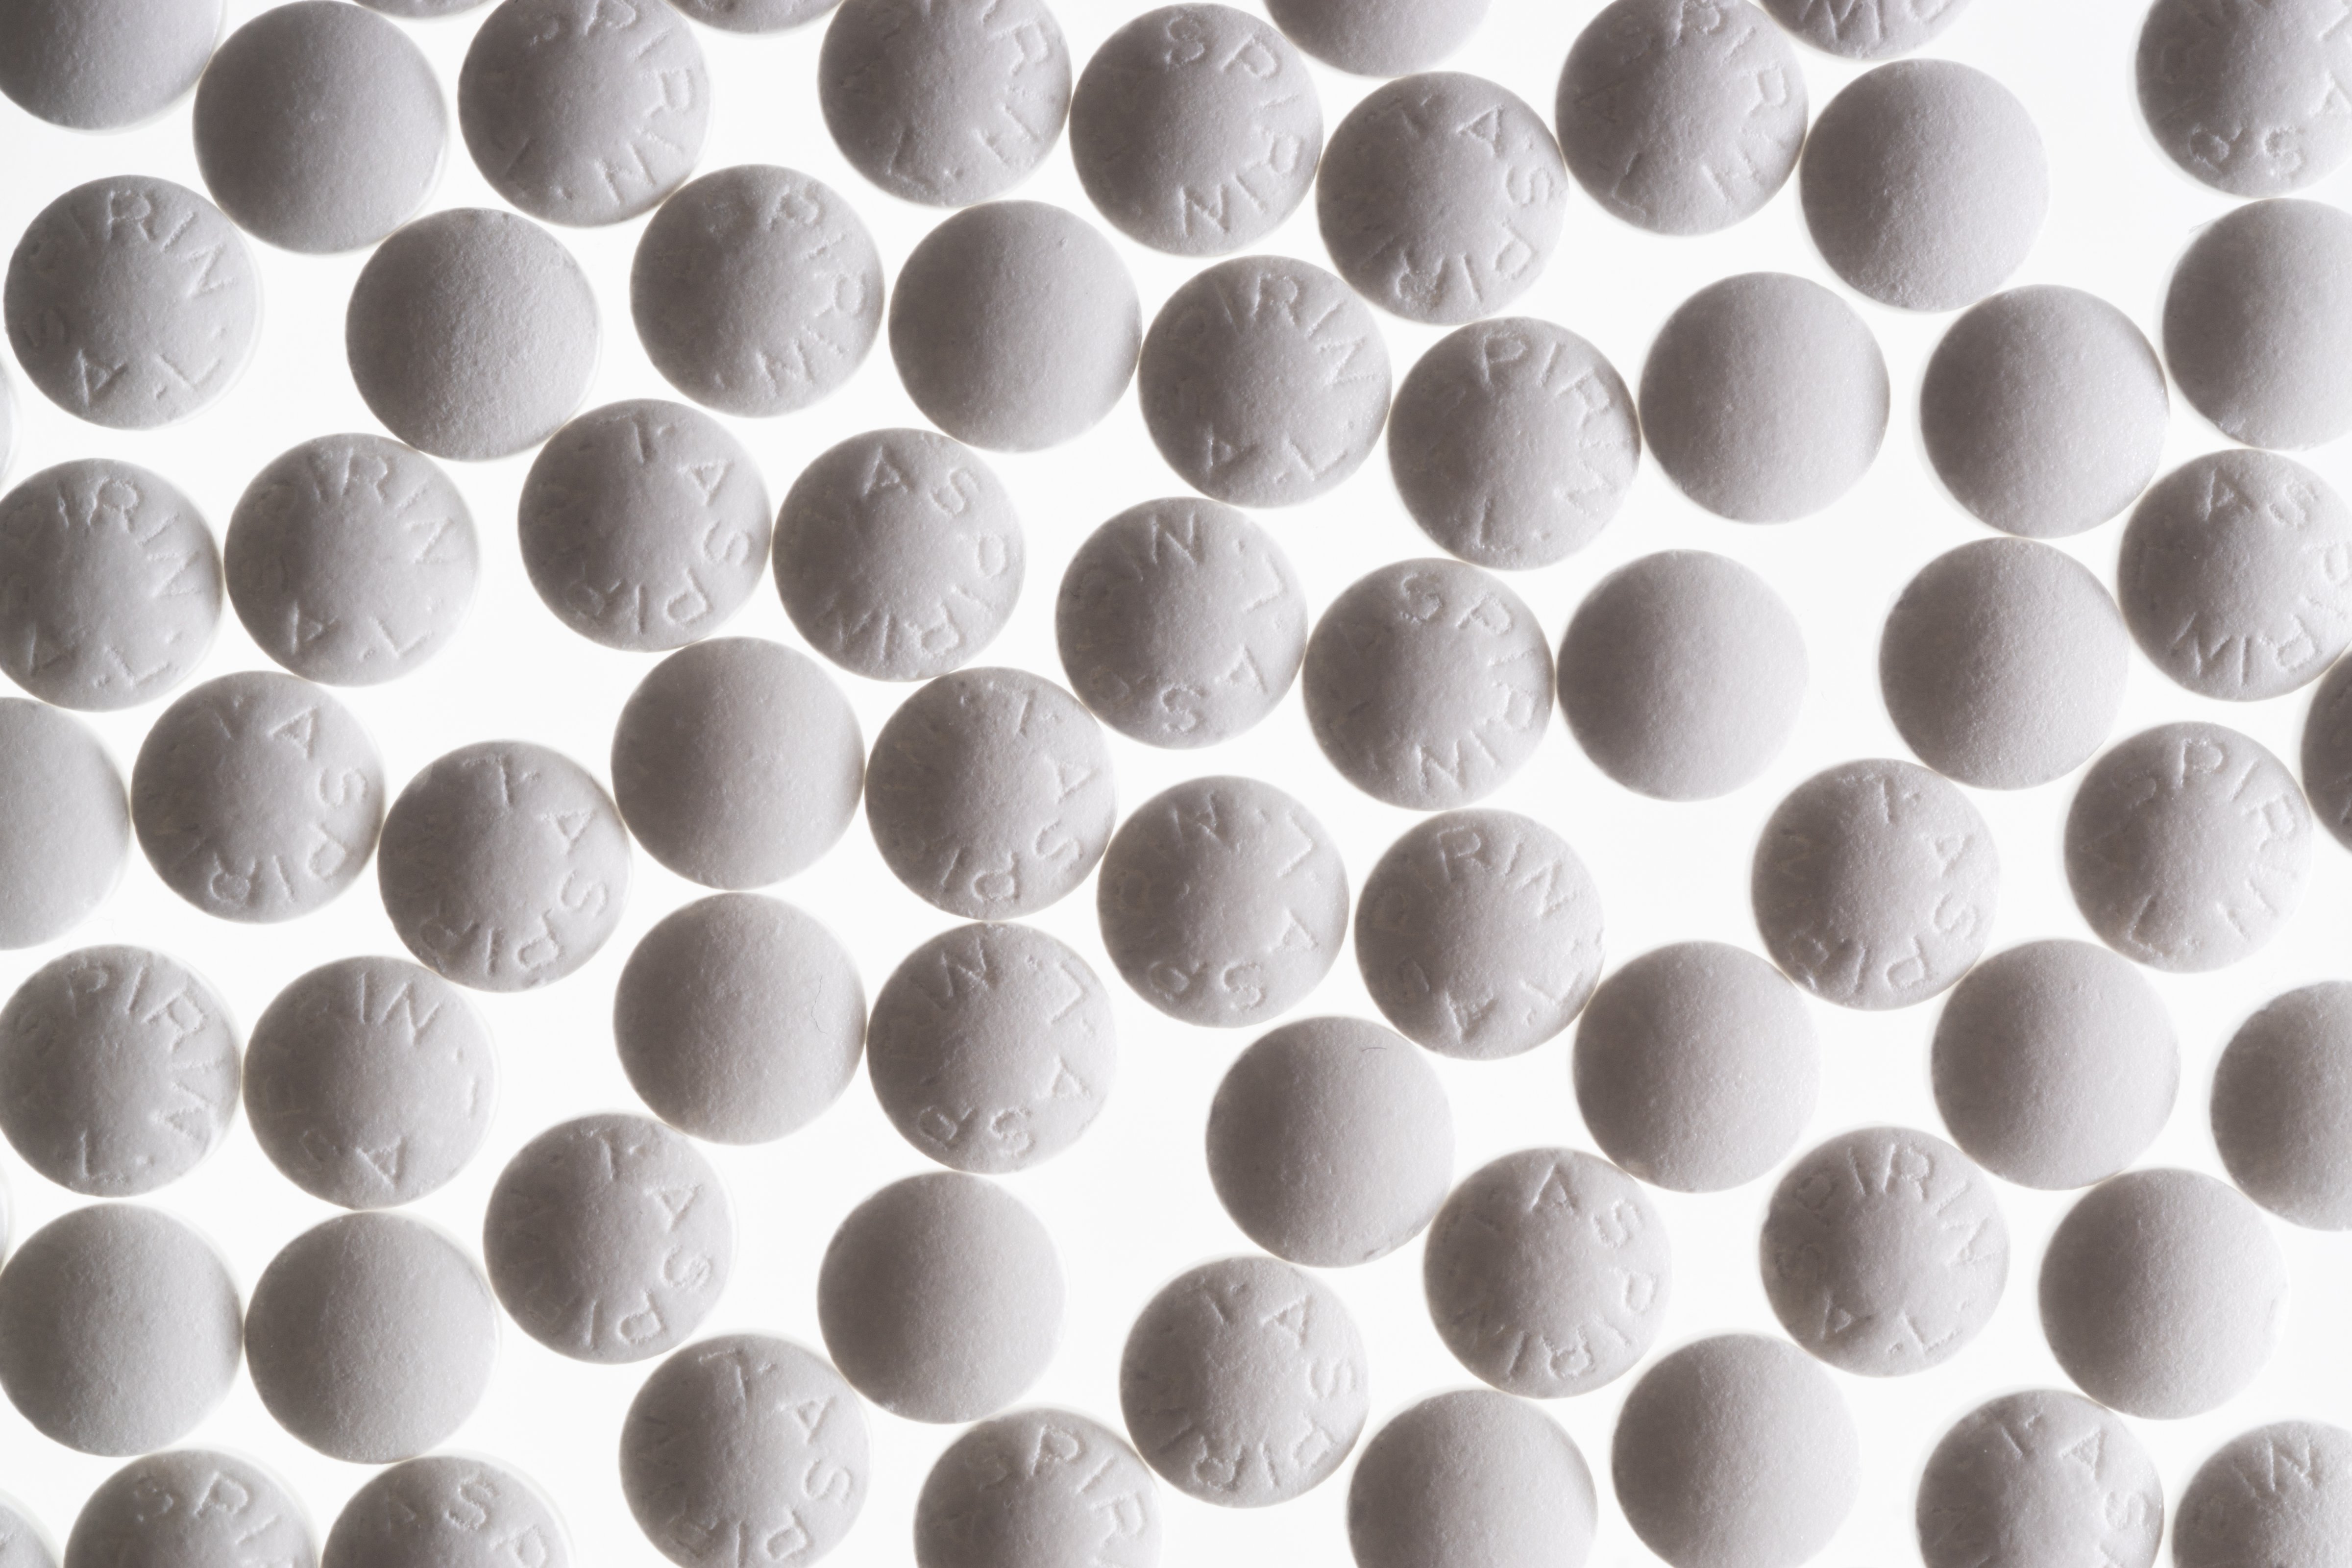 Abundance of Aspirin Tablets